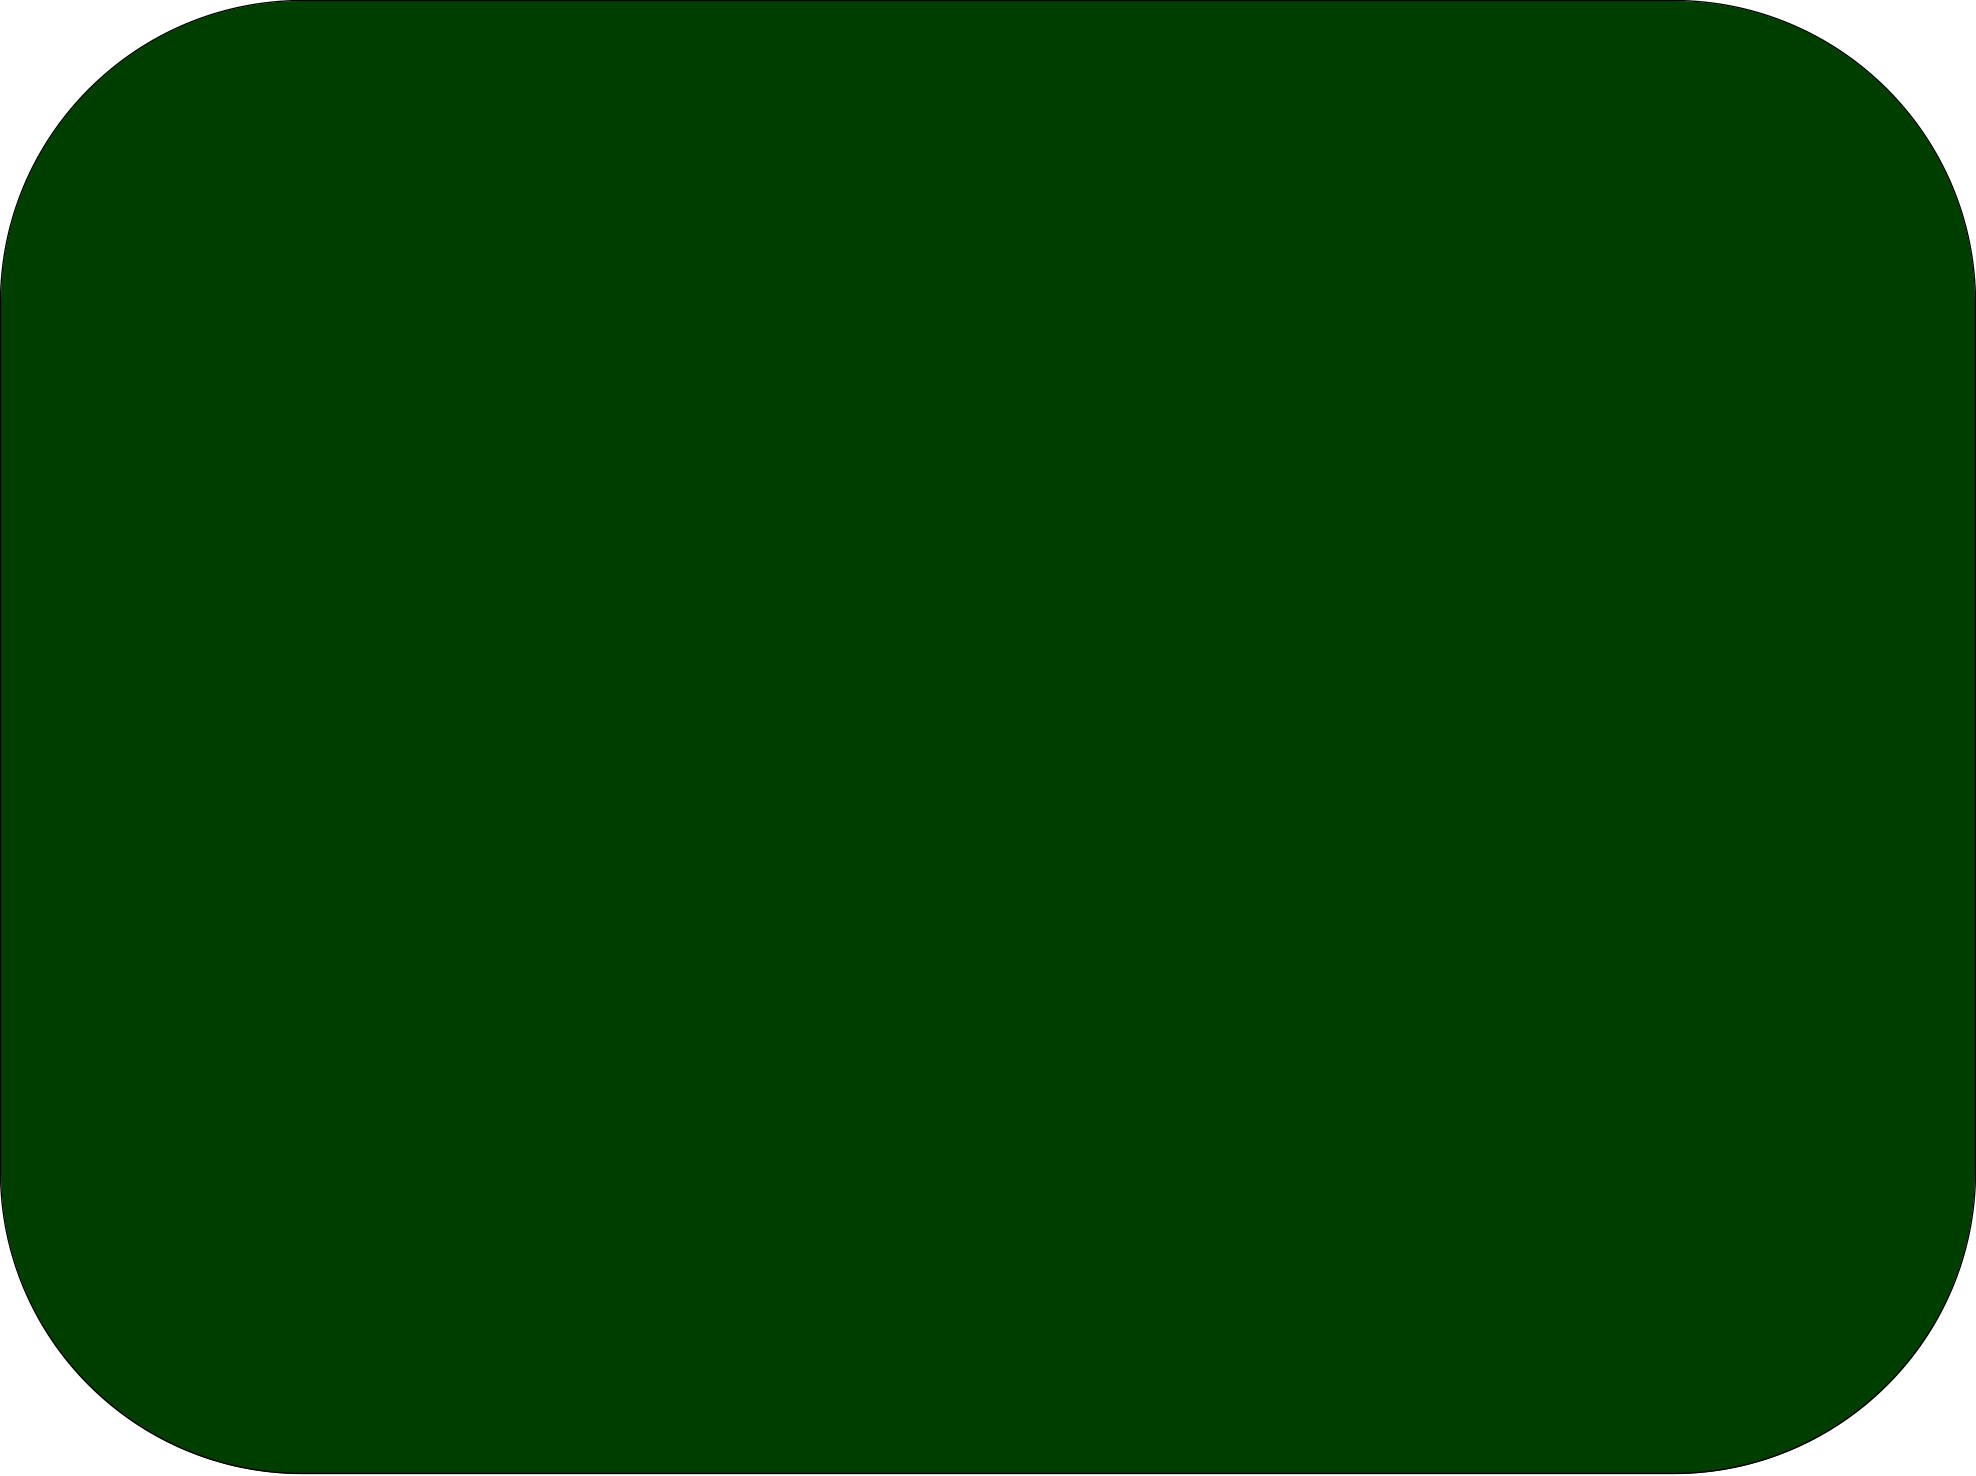 Слабо зеленый цвет. Эмеральд Грин цвет. Темно зеленый цвет. Тёмно-зелёный цвет. Зеленый цвет темный.